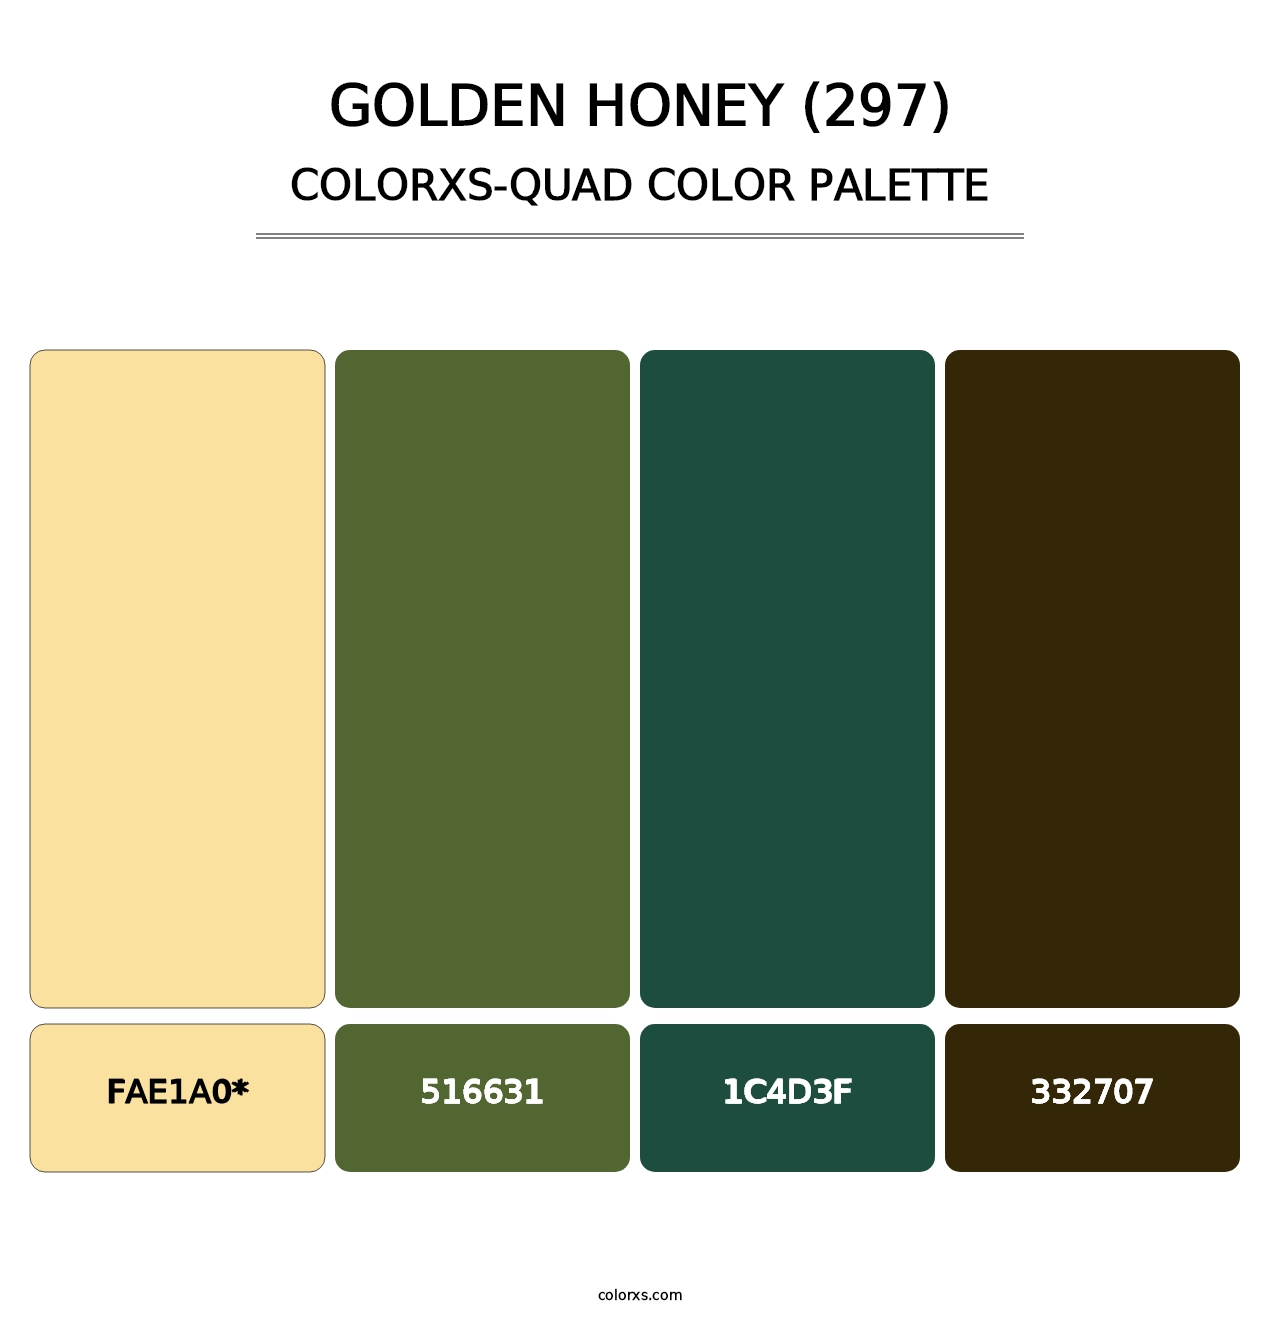 Golden Honey (297) - Colorxs Quad Palette